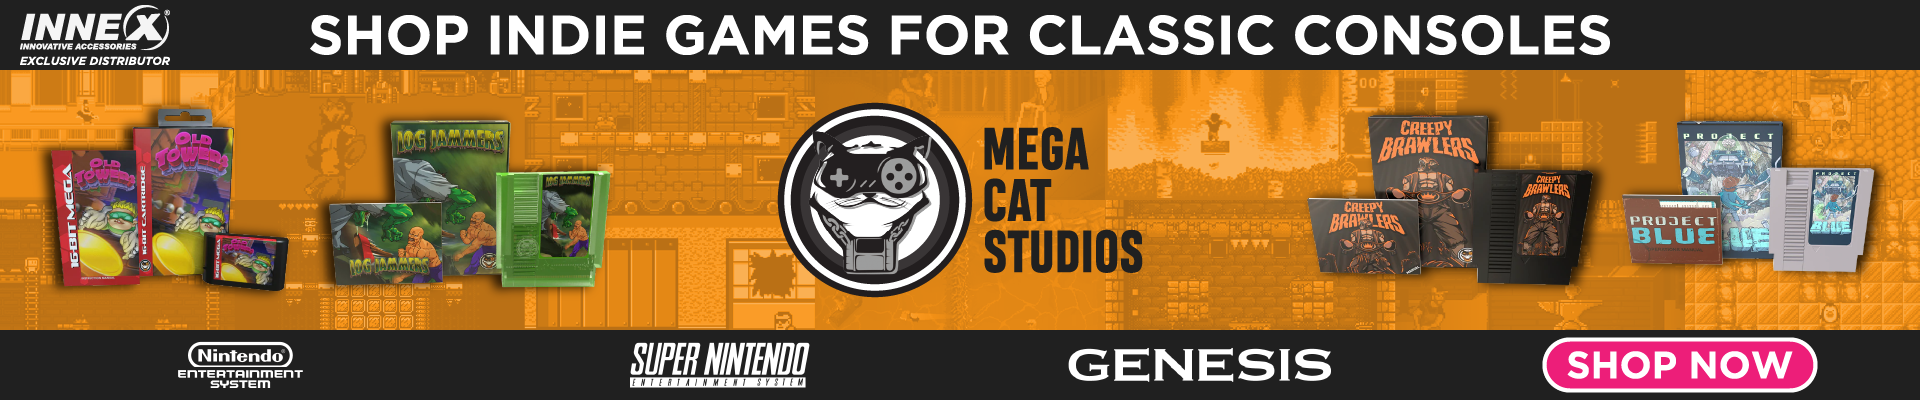 Mega Cat Studios - Shop indie games for classic consoles!